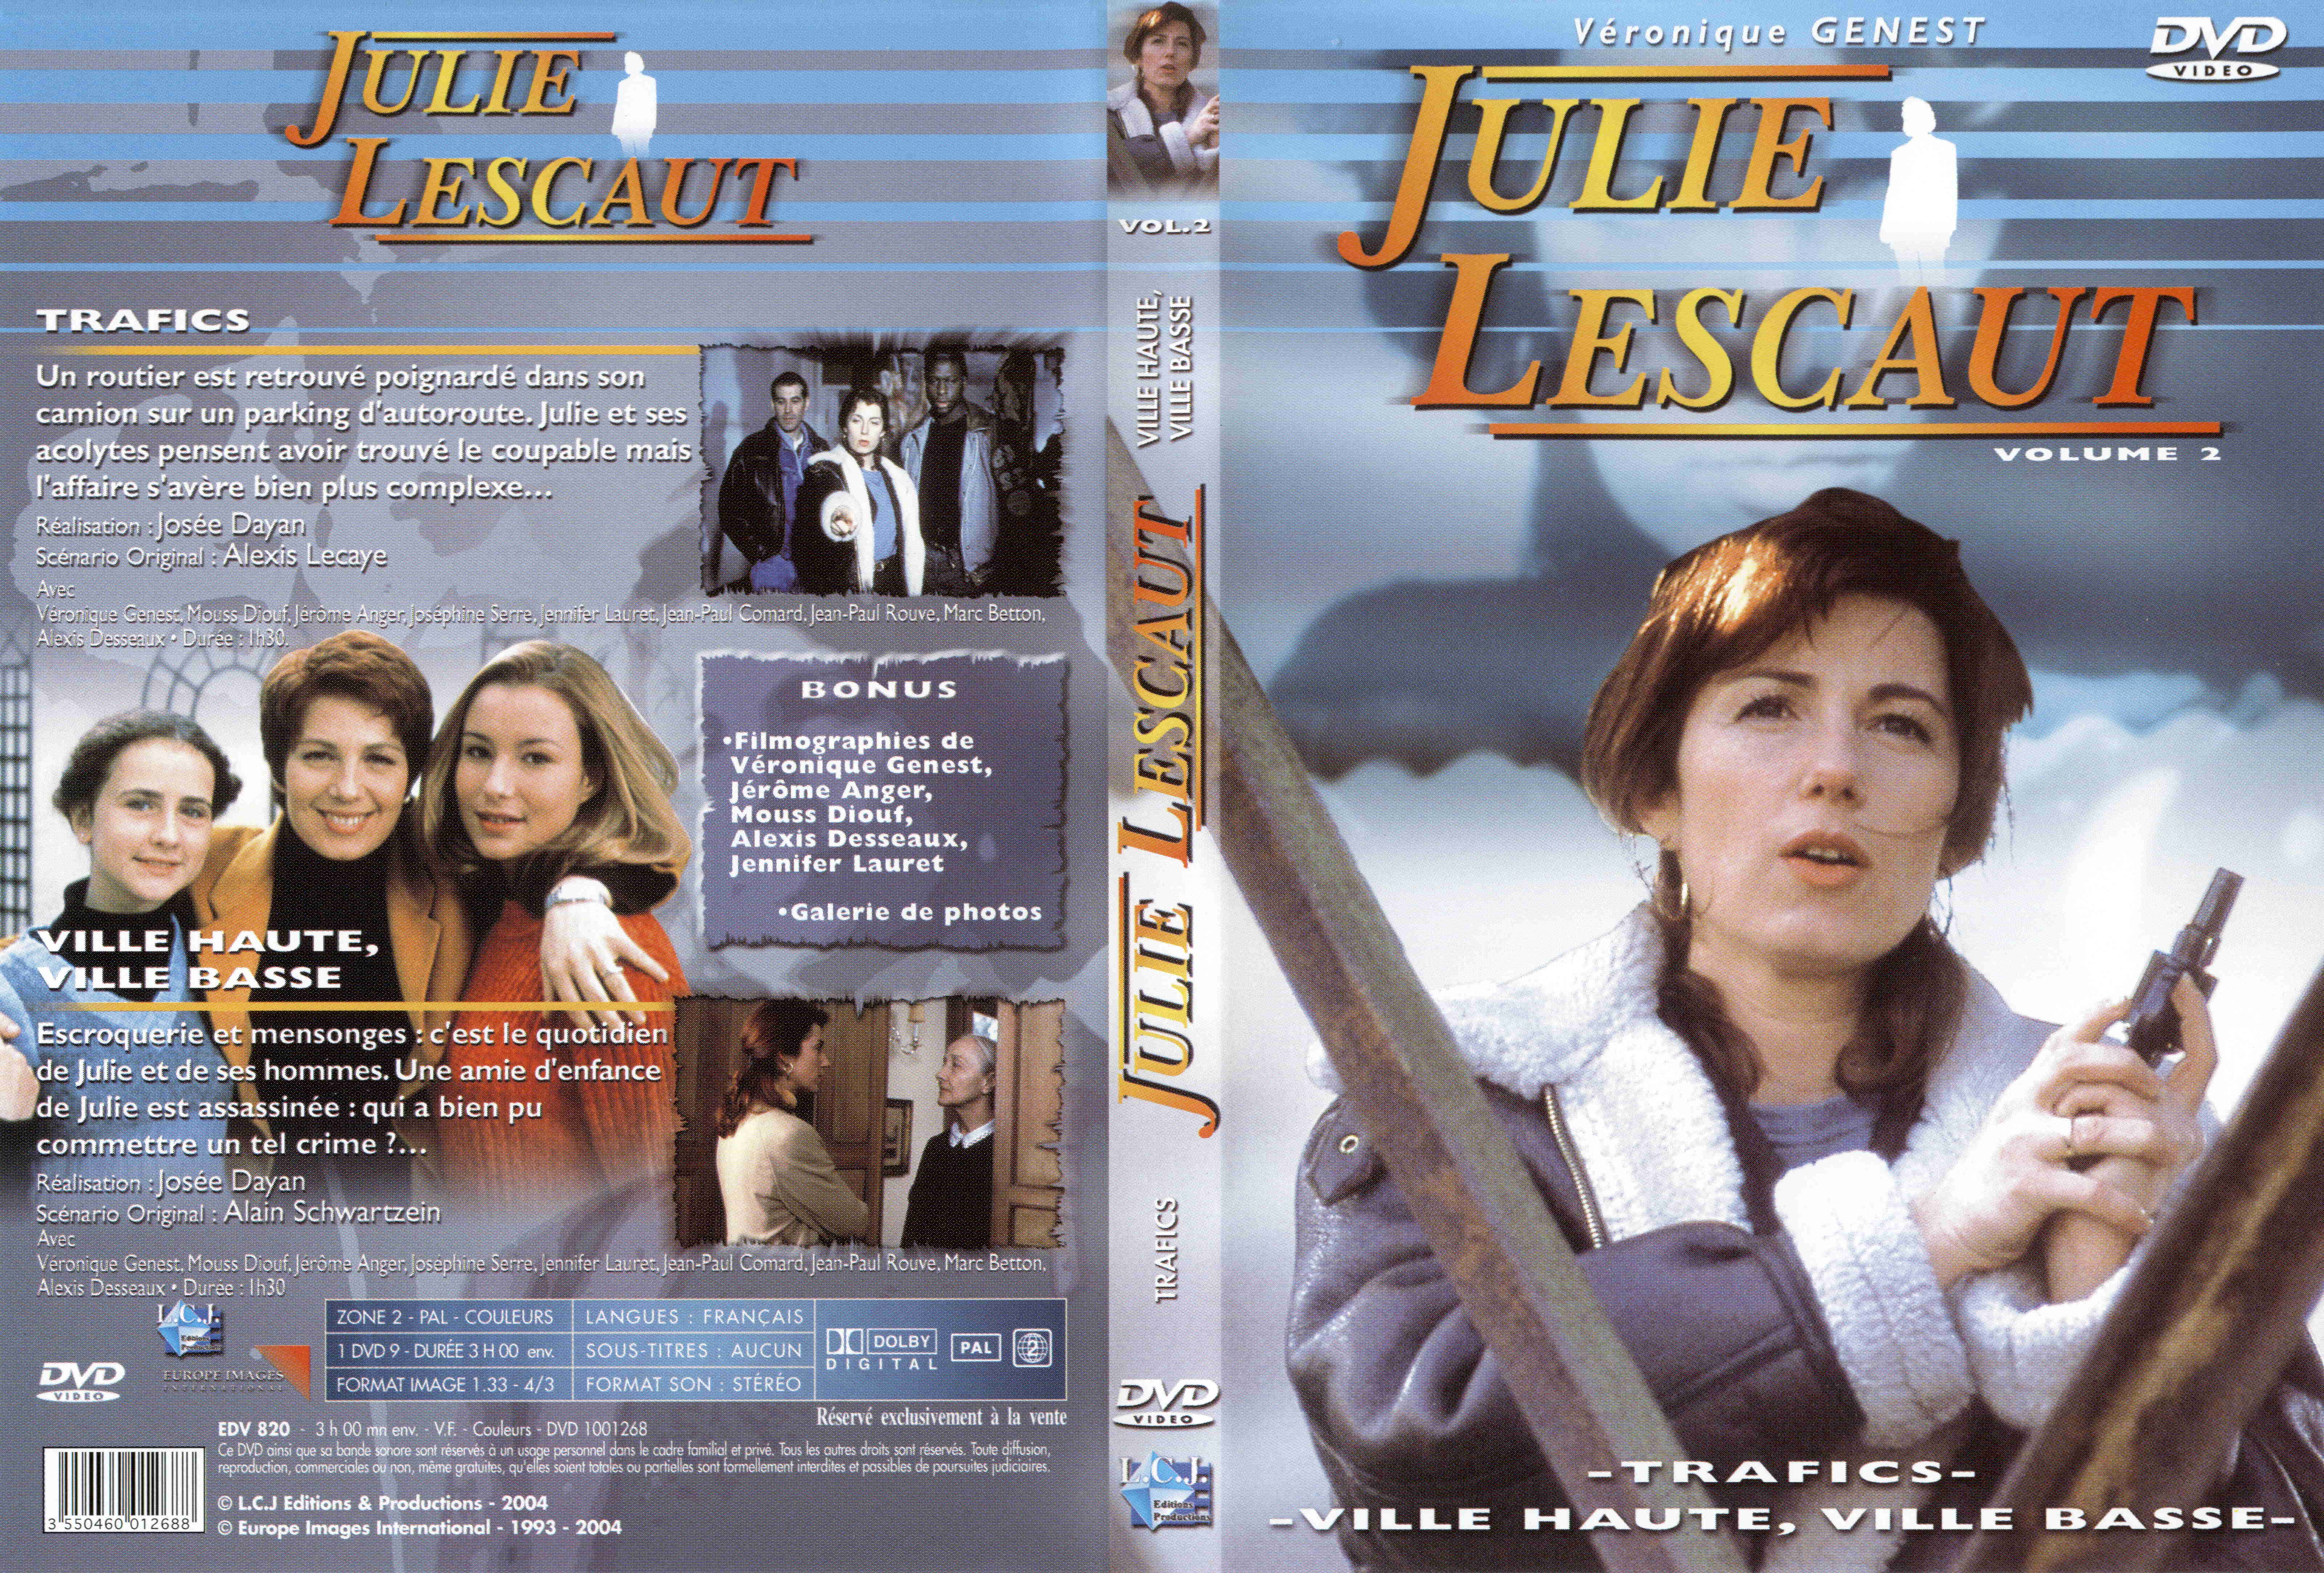 Jaquette DVD Julie Lescaut vol 02